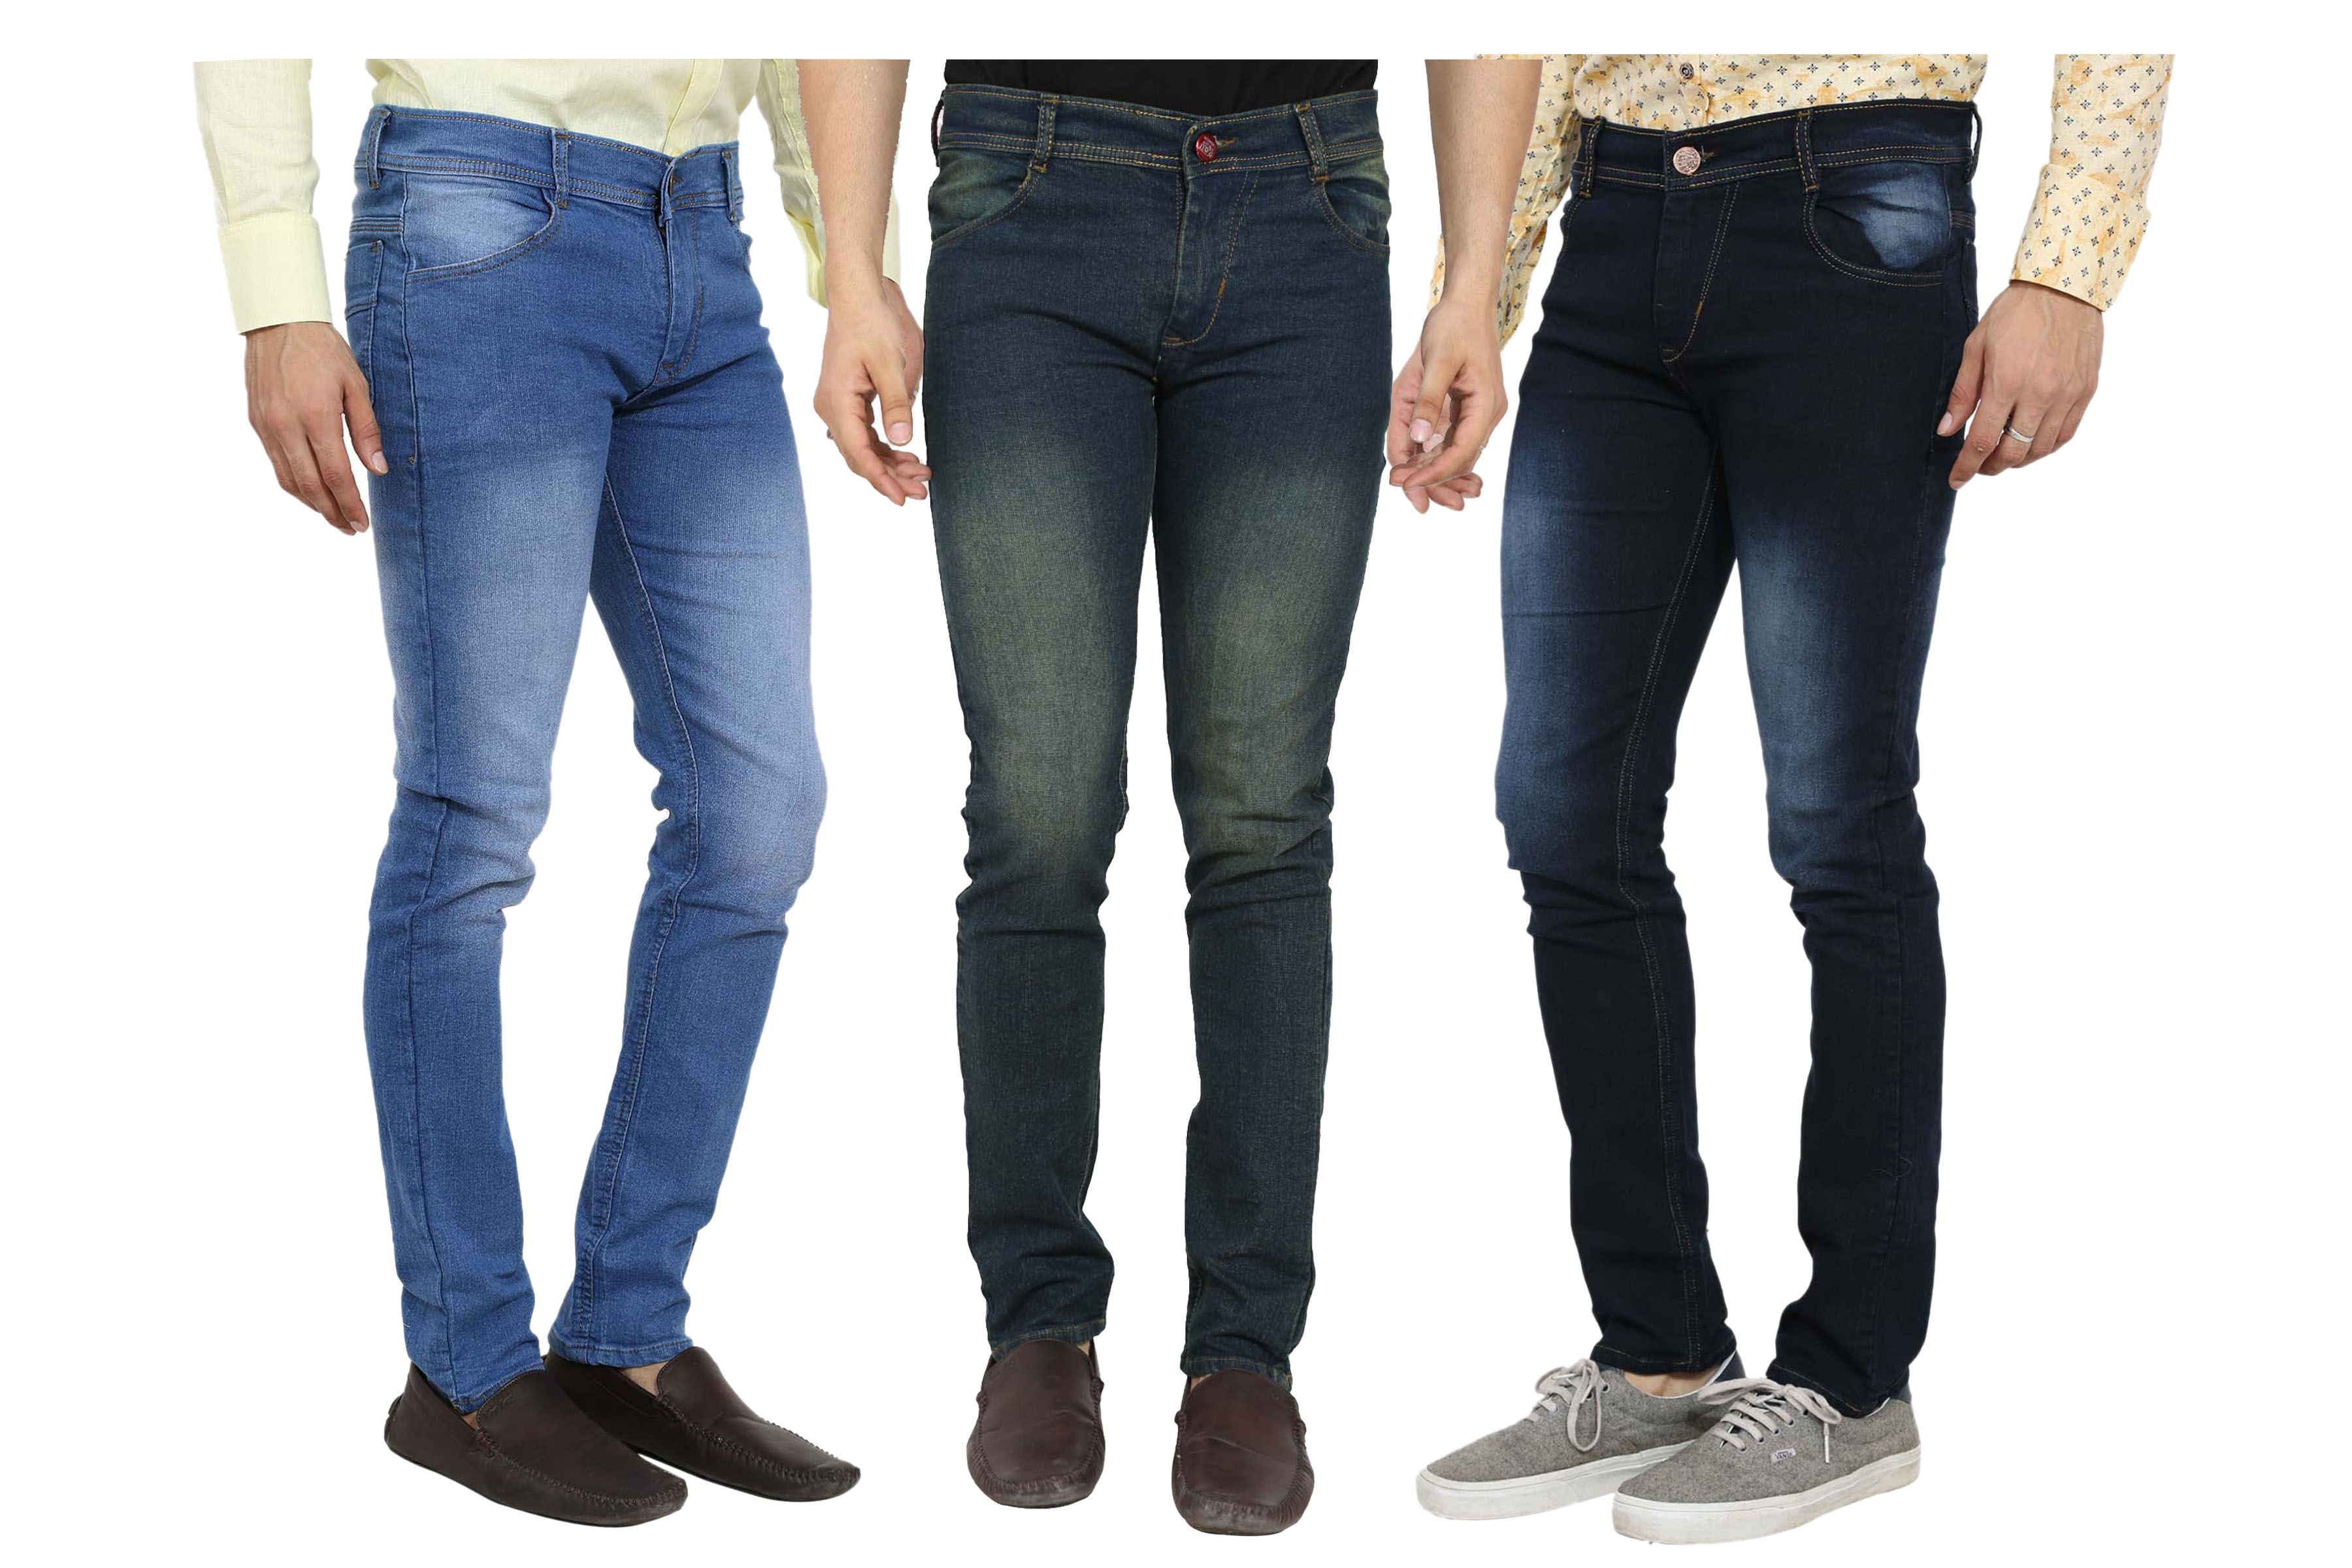 Buy Spain Style Men's Pack of 3 Slim Fit Multicolor Jeans Online ...